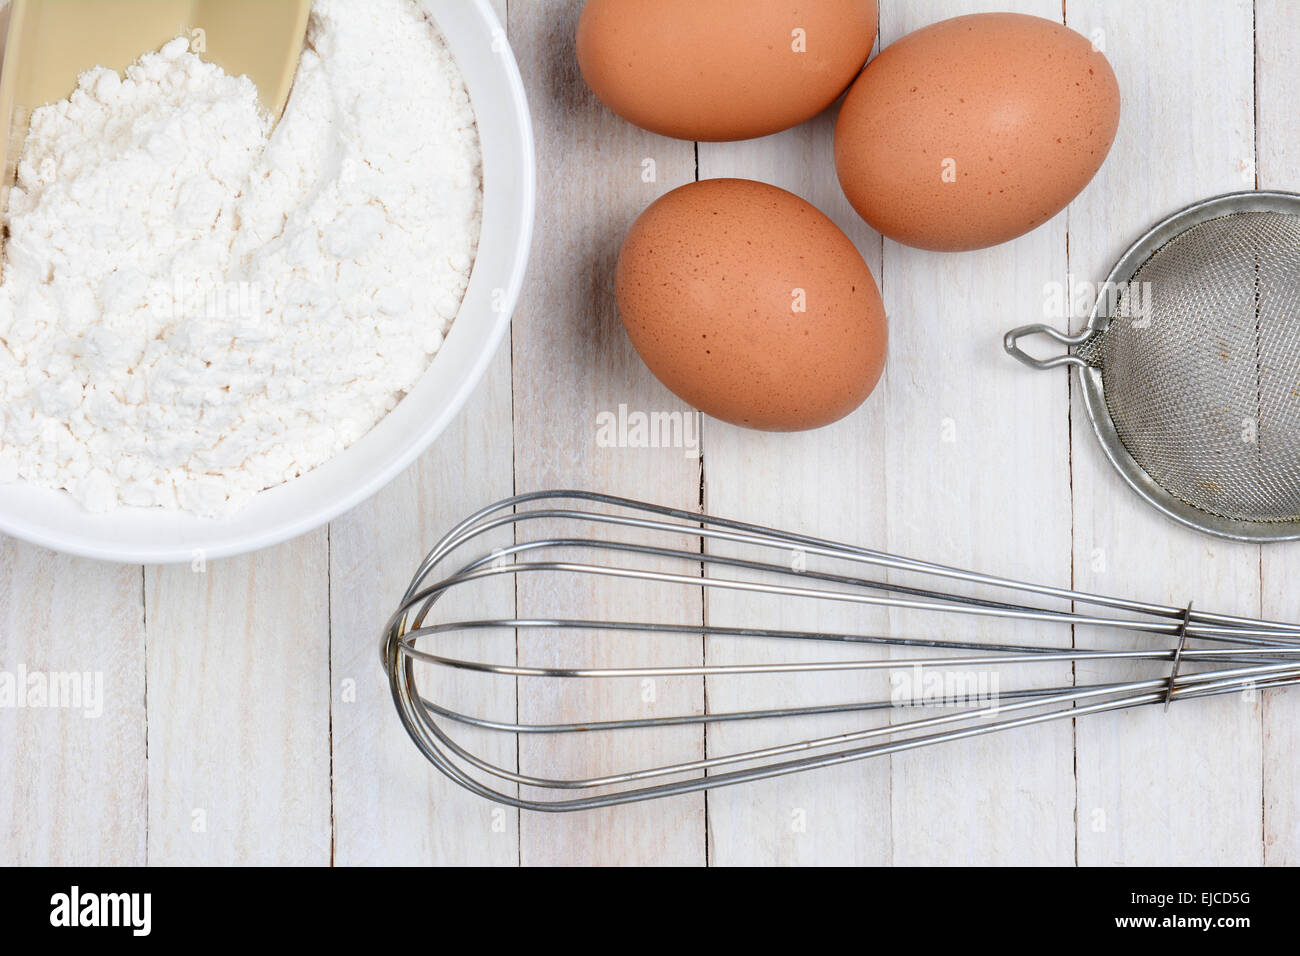 Hohen Winkel Closeup drei braune Eier, eine Schüssel mit Mehl, einen Schneebesen und Sieb auf einem rustikalen weißen Küchentisch. Stockfoto